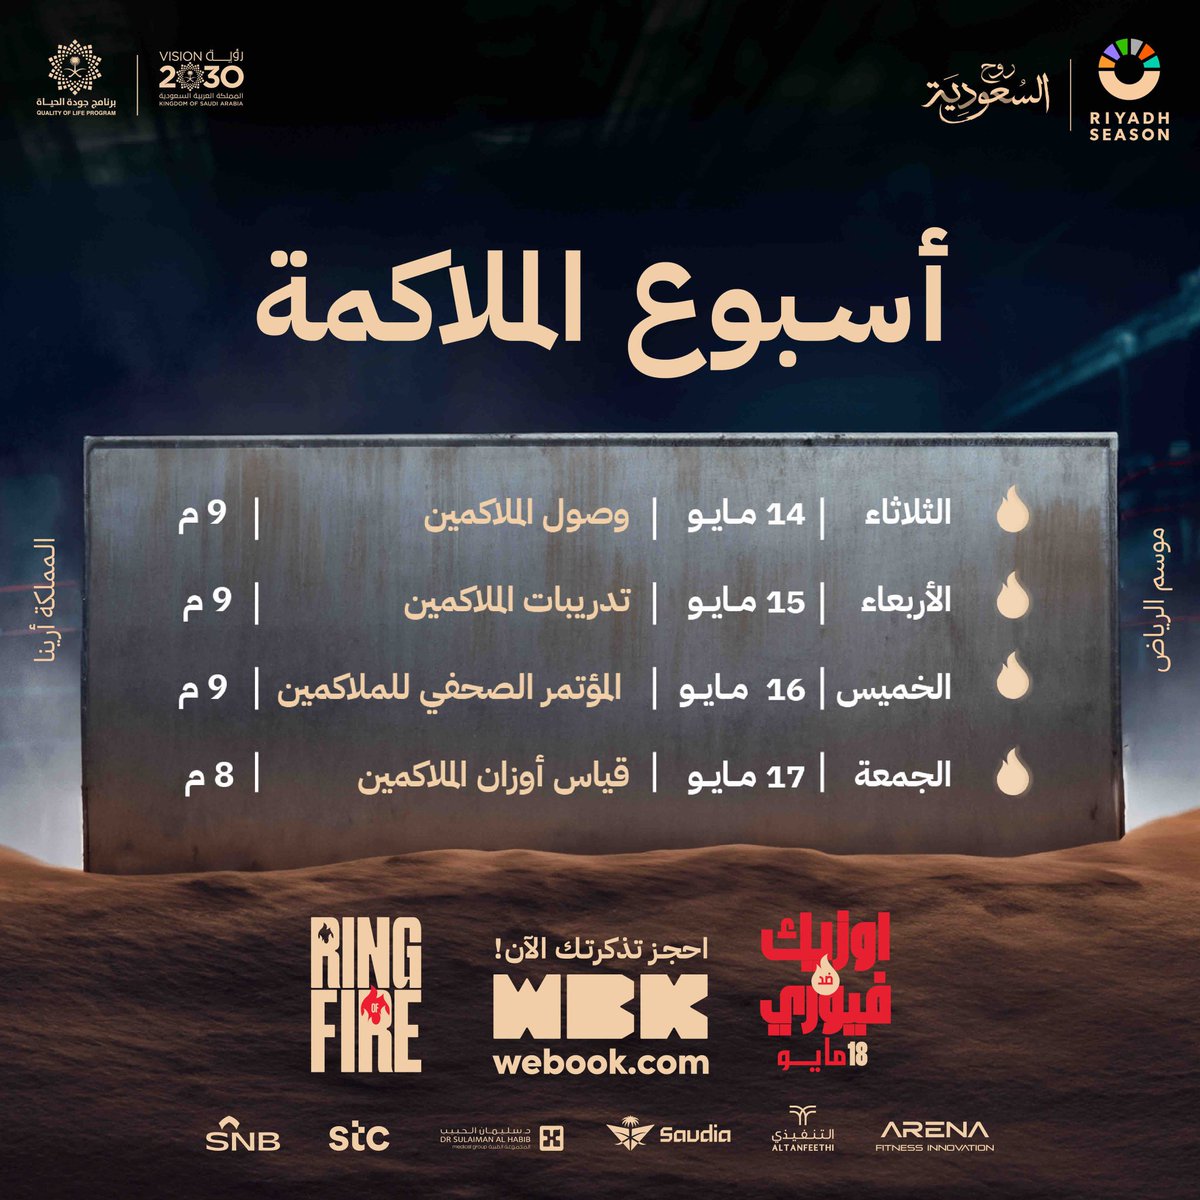 مستعدين لأسبوع الحدث العالمي #RingOfFire ؟ 🥊

احجز تذكرتك الآن 🎟👇🏼
wa.me/+966562795294
#BigTime 
#RiyadhSeason
#RingOfFire